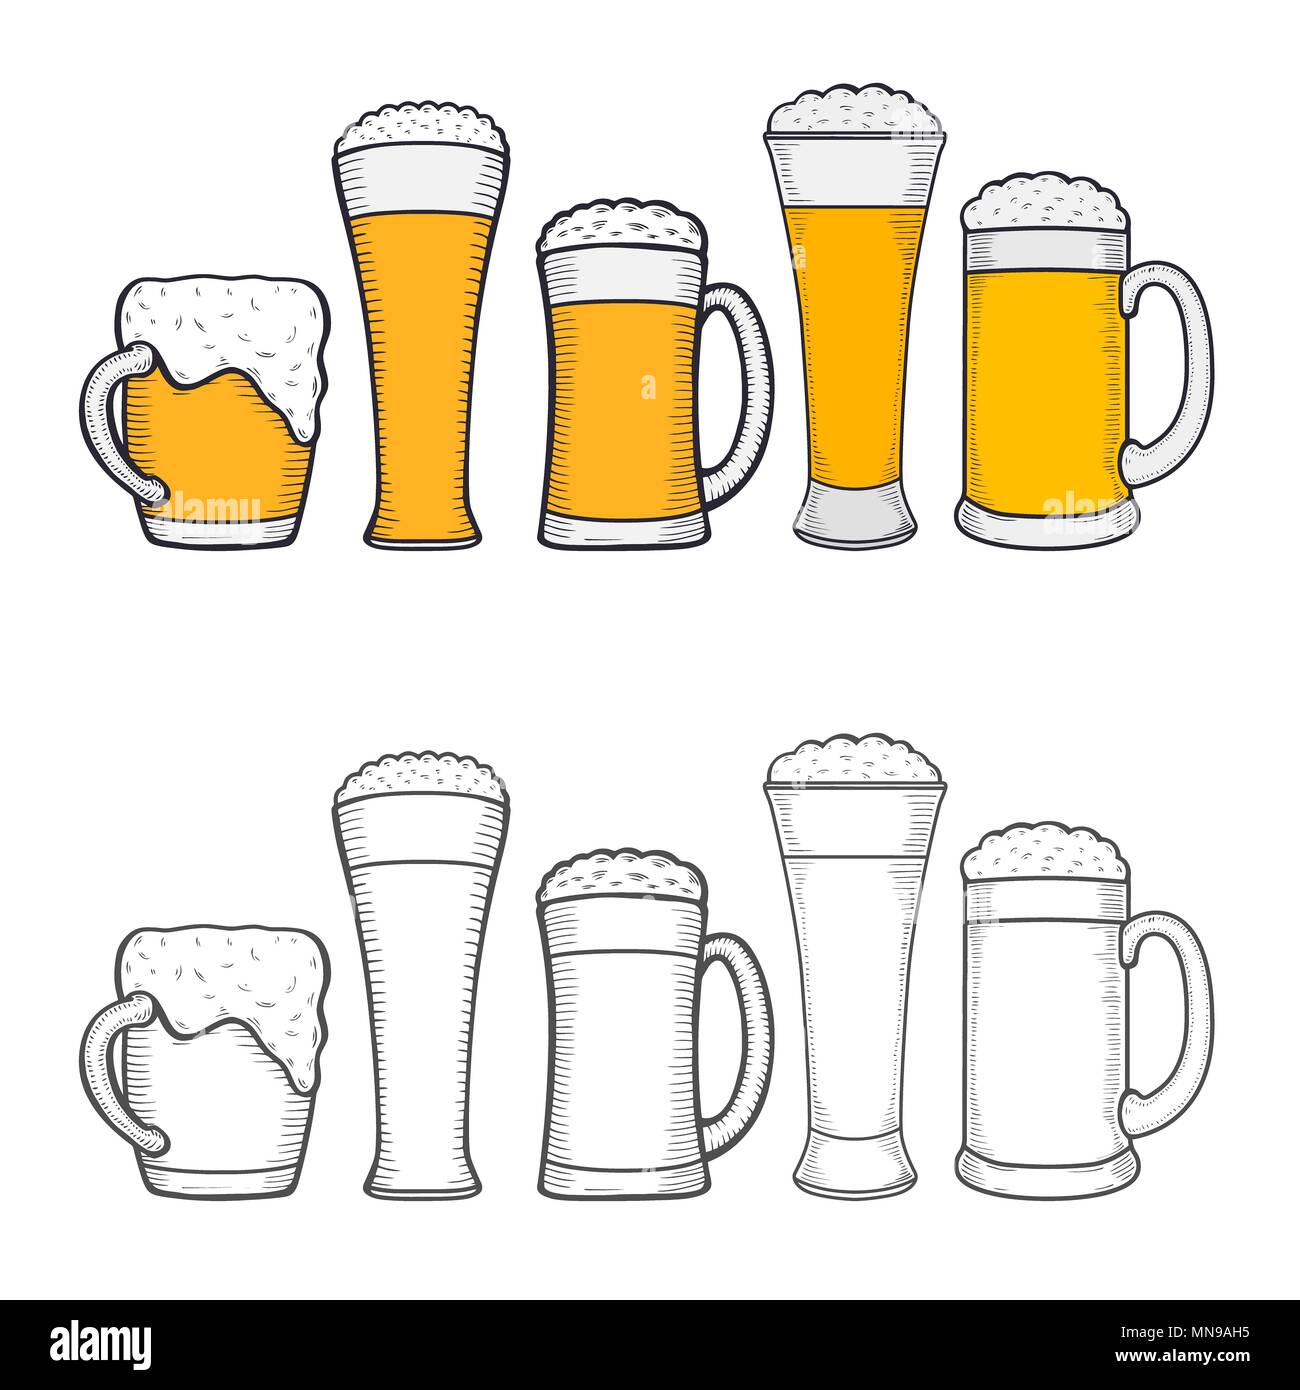 Gläser Bier, Hand - Zeichnung Oktoberfest Bier, Bier mit Schaum  Stockfotografie - Alamy